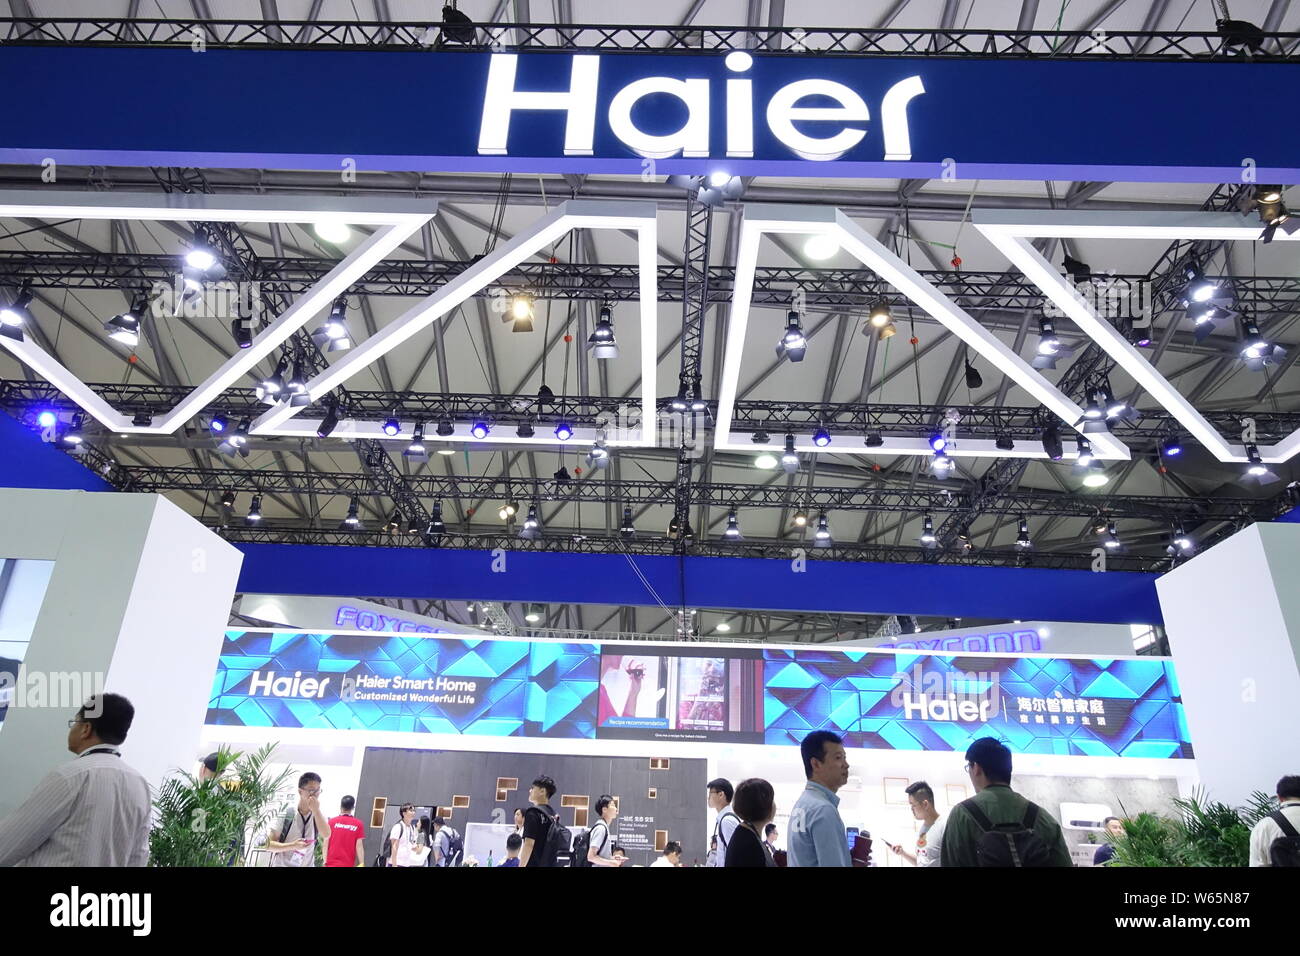 ---- Leute besuchen Sie den Stand von Haier während einer Ausstellung in Shanghai, China, 26. Juli 2018. Chinesische consumer electronics Firma Haier Haushaltsgeräte Stockfoto